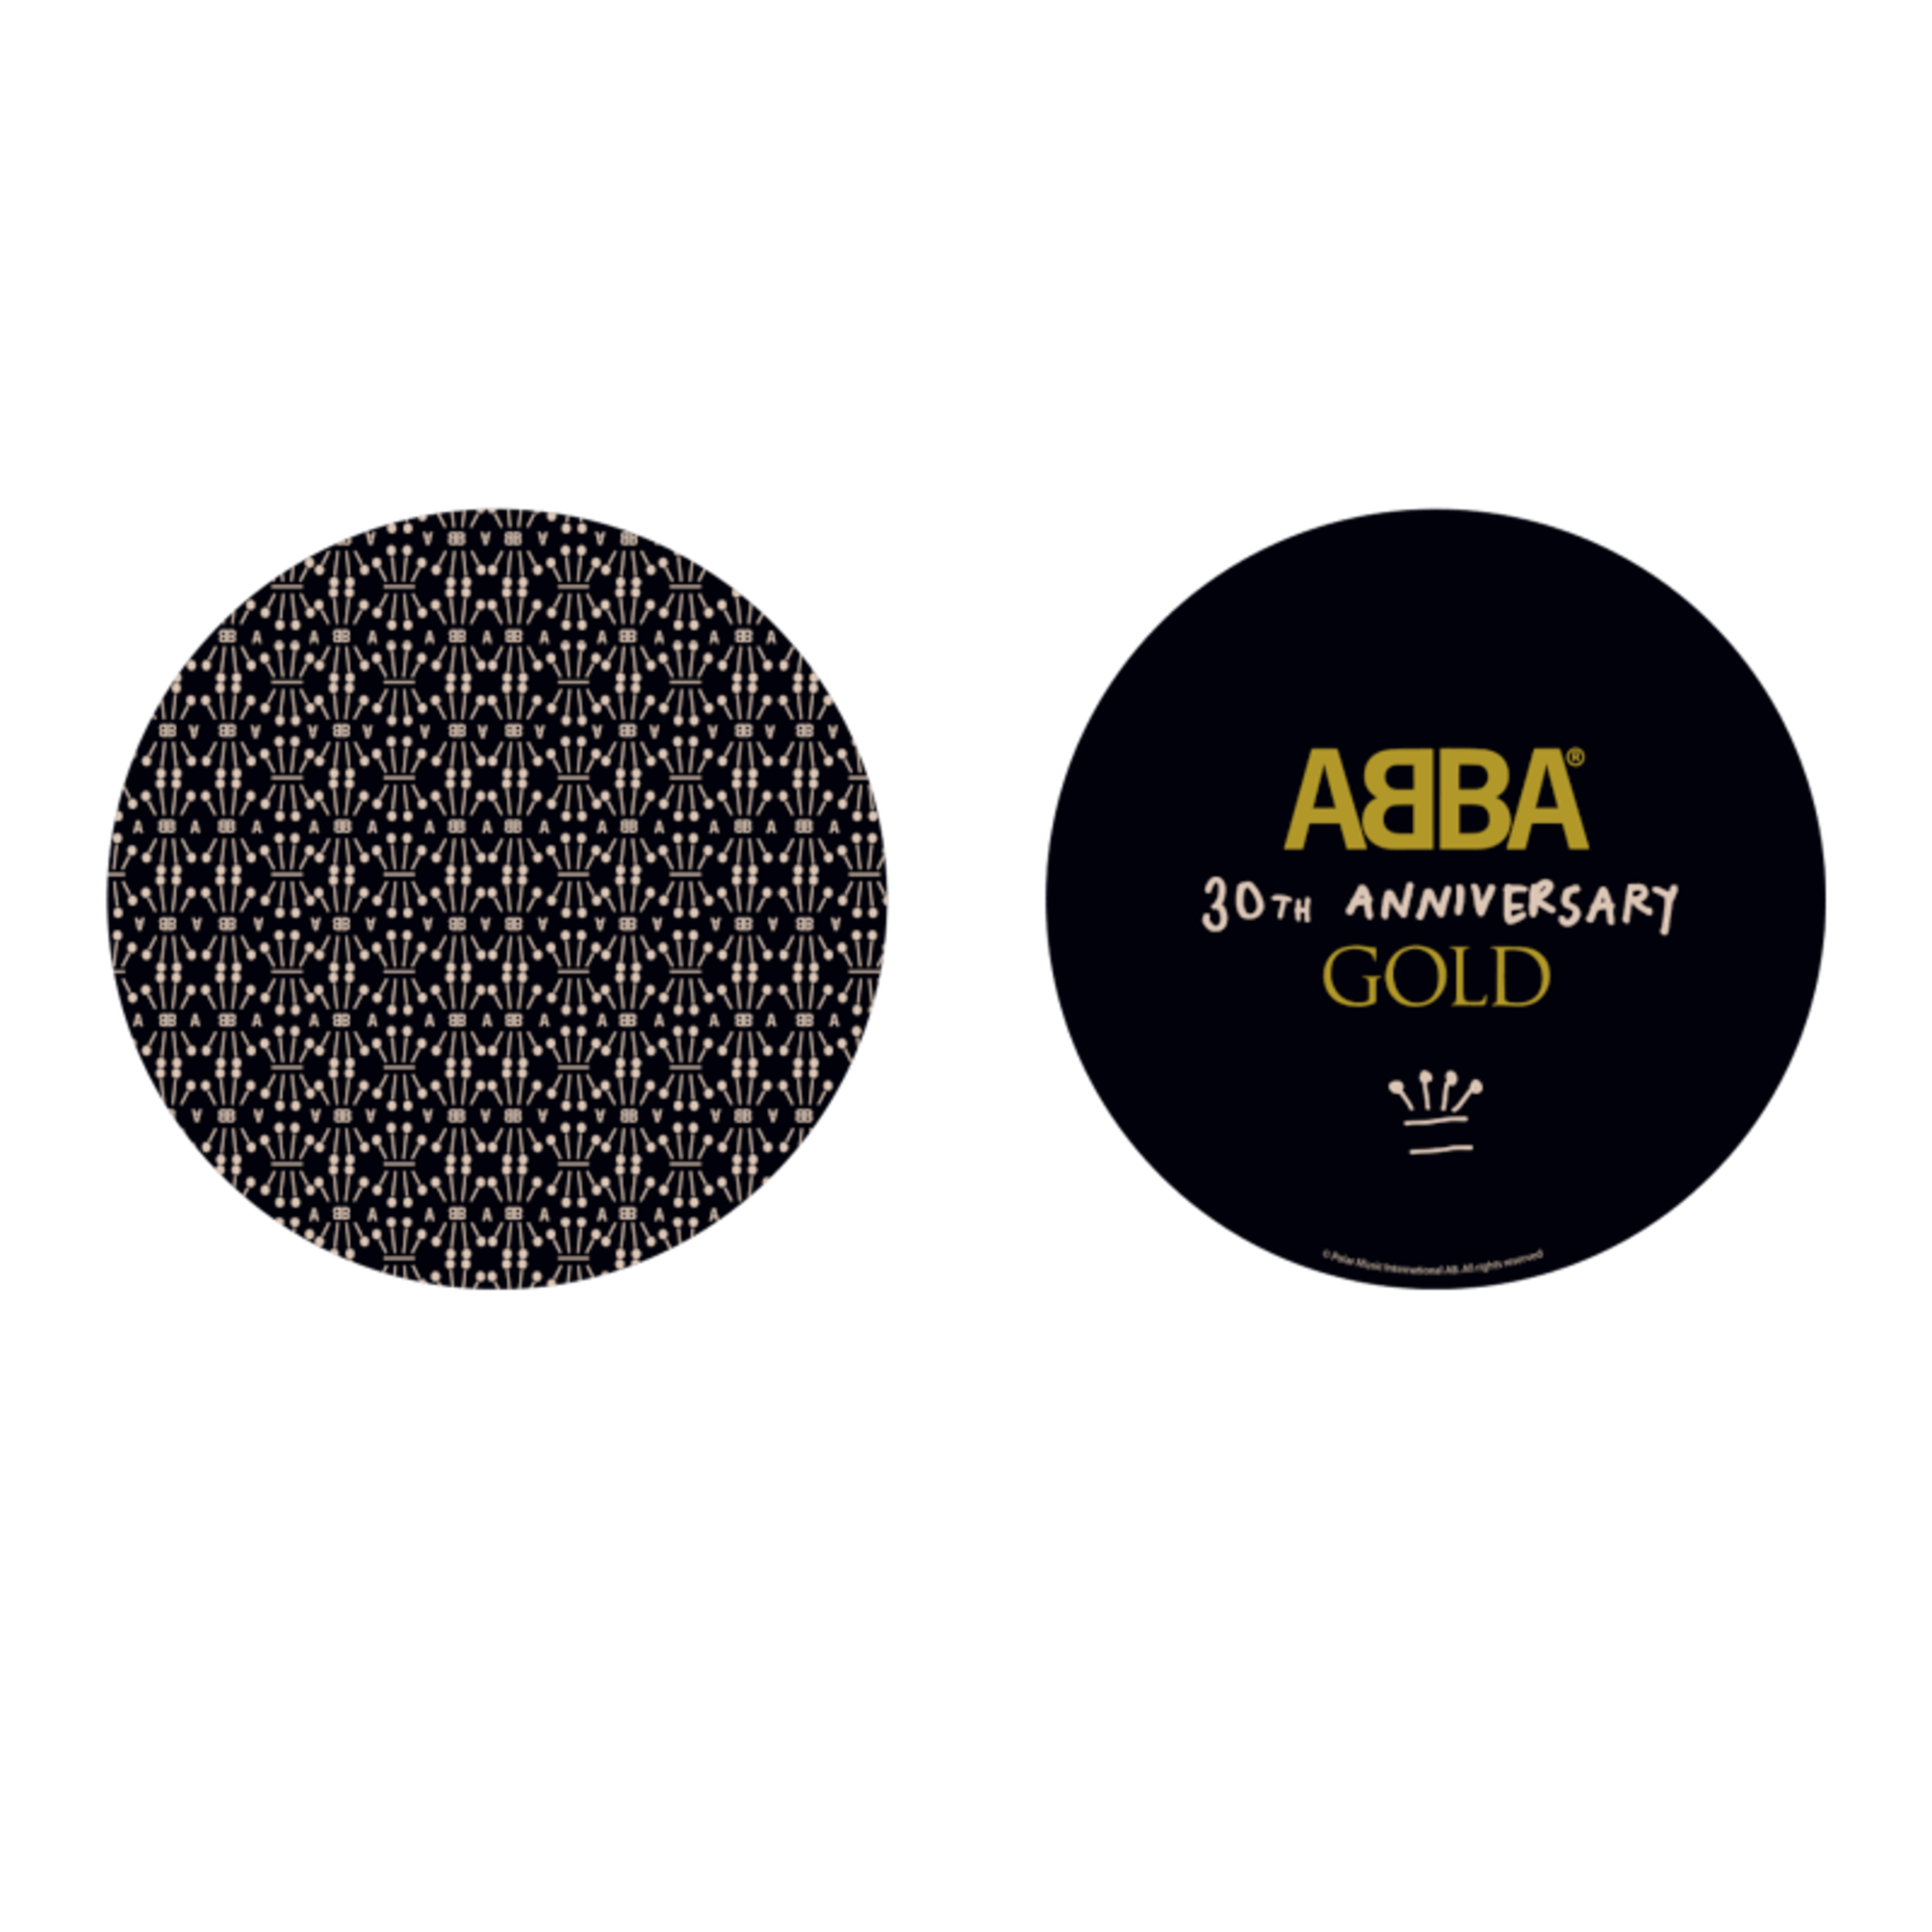 https://images.bravado.de/prod/product-assets/product-asset-data/abba/abba/products/143576/web/325221/image-thumb__325221__3000x3000_original/ABBA-Gold-30th-Anniversary-Vinyl-Bundle-zu-bundeln-143576-325221.png